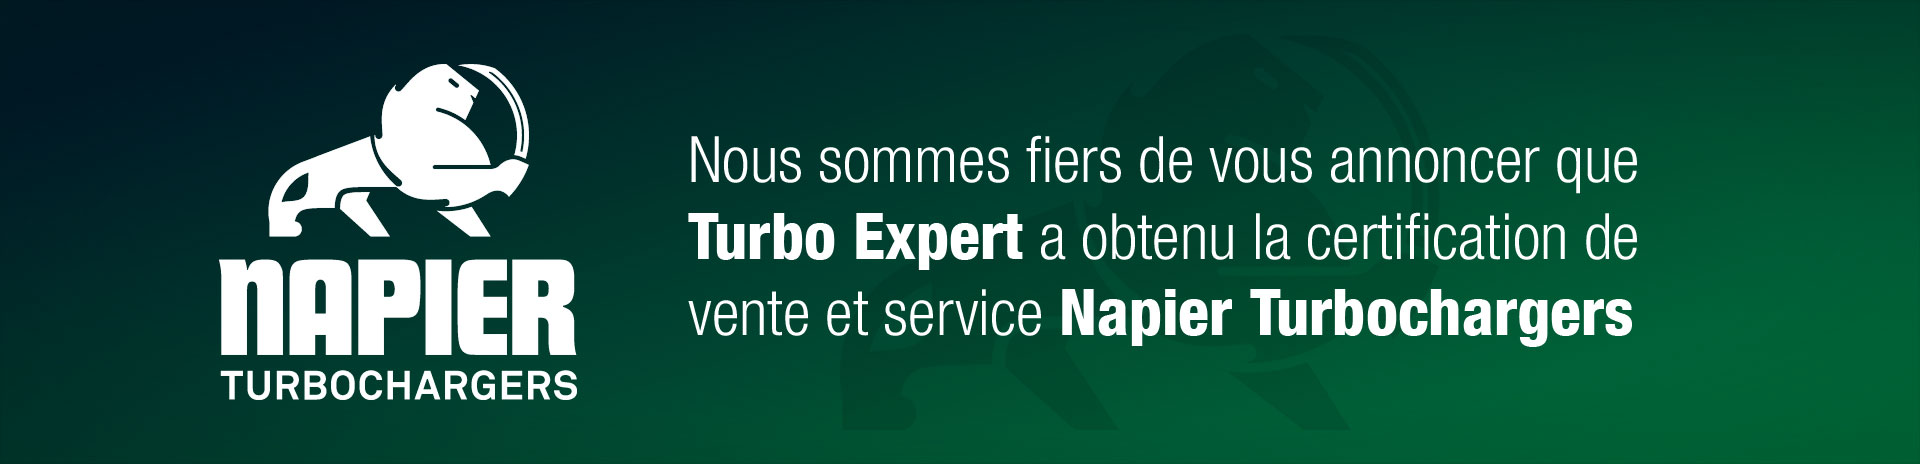 Nous sommes fiers de vous annoncer que Turbo Expert a obtenu la certification de vente et service Napier Turbochargers